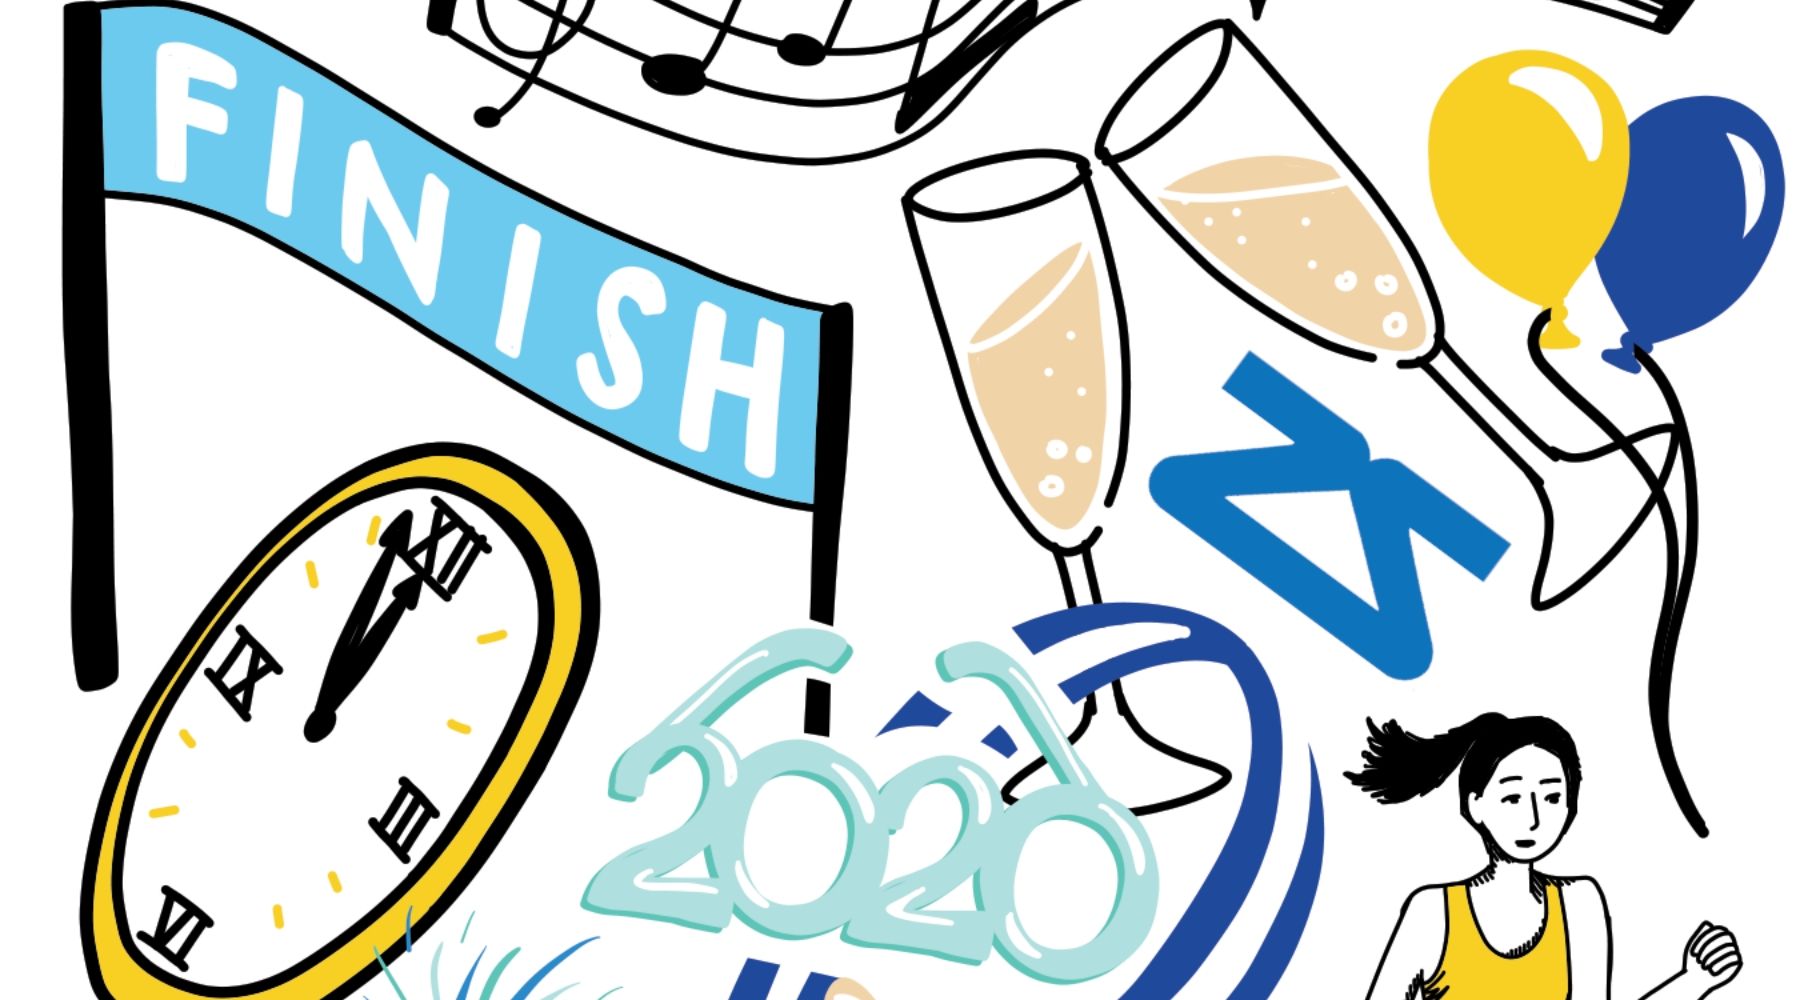 Zensah 2020 Doodle Collection